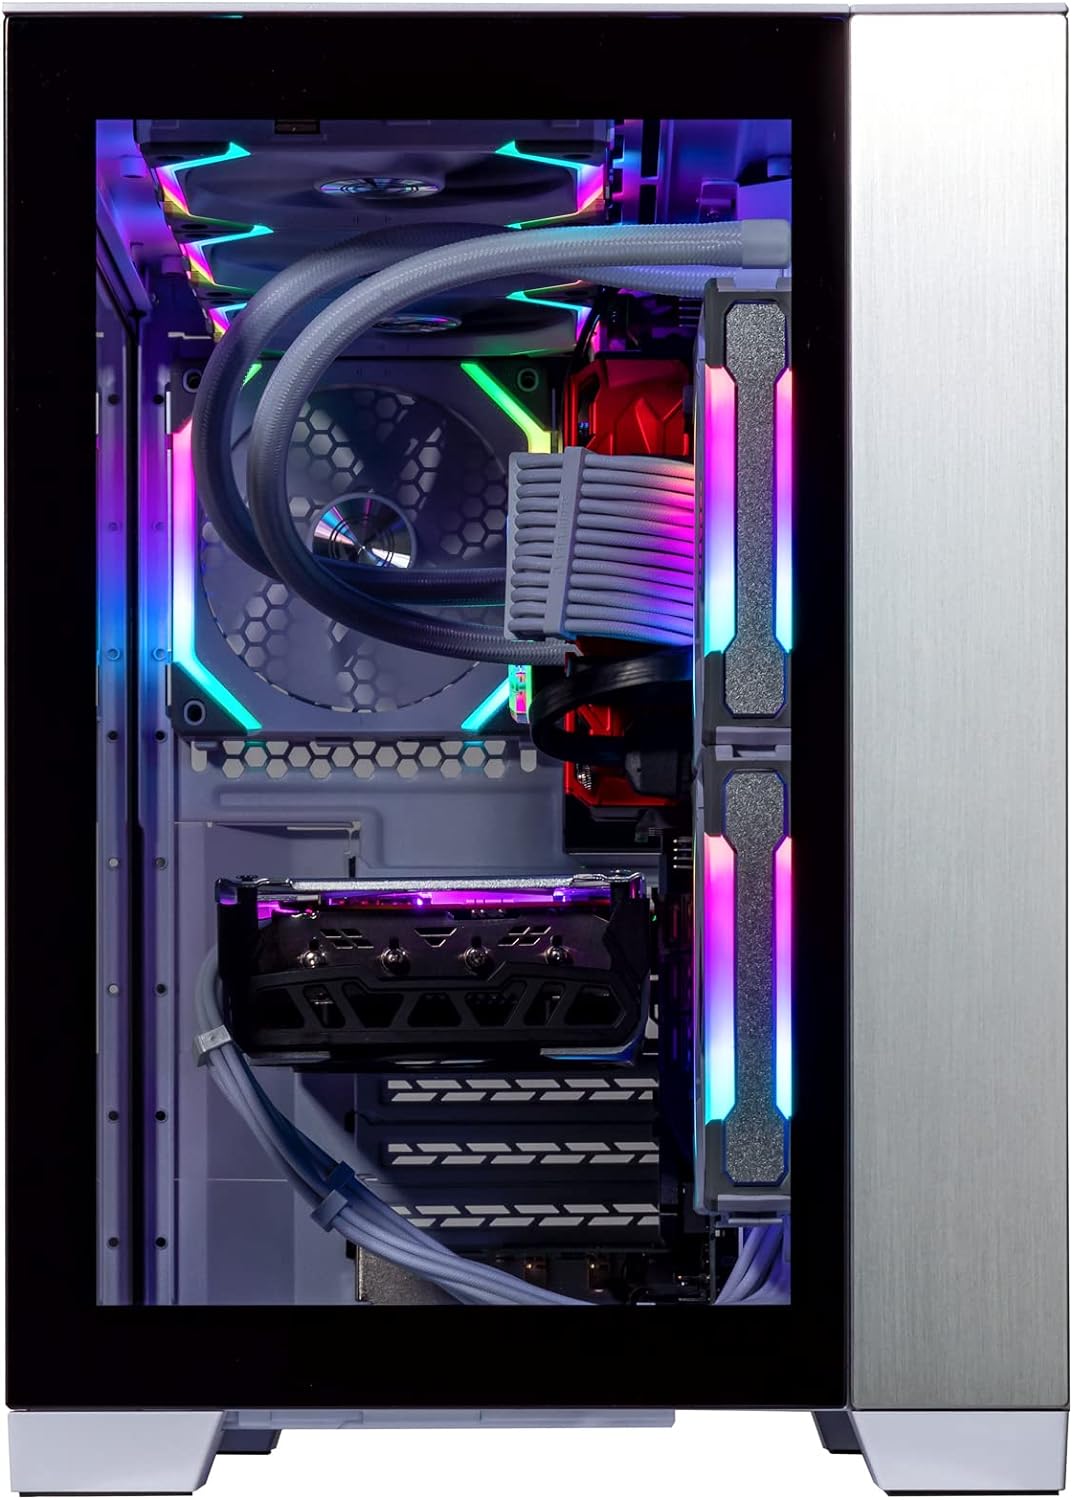 Velztorm Mini Lux Gaming Desktop PC (AMD Ryzen 9 5950X 16-Core, Radeon RX 7900 XT, 32GB RAM, 512GB PCIe SSD + 2TB HDD (3.5), WiFi, USB 3.2, HDMI, Display Port, Win 10 Pro)